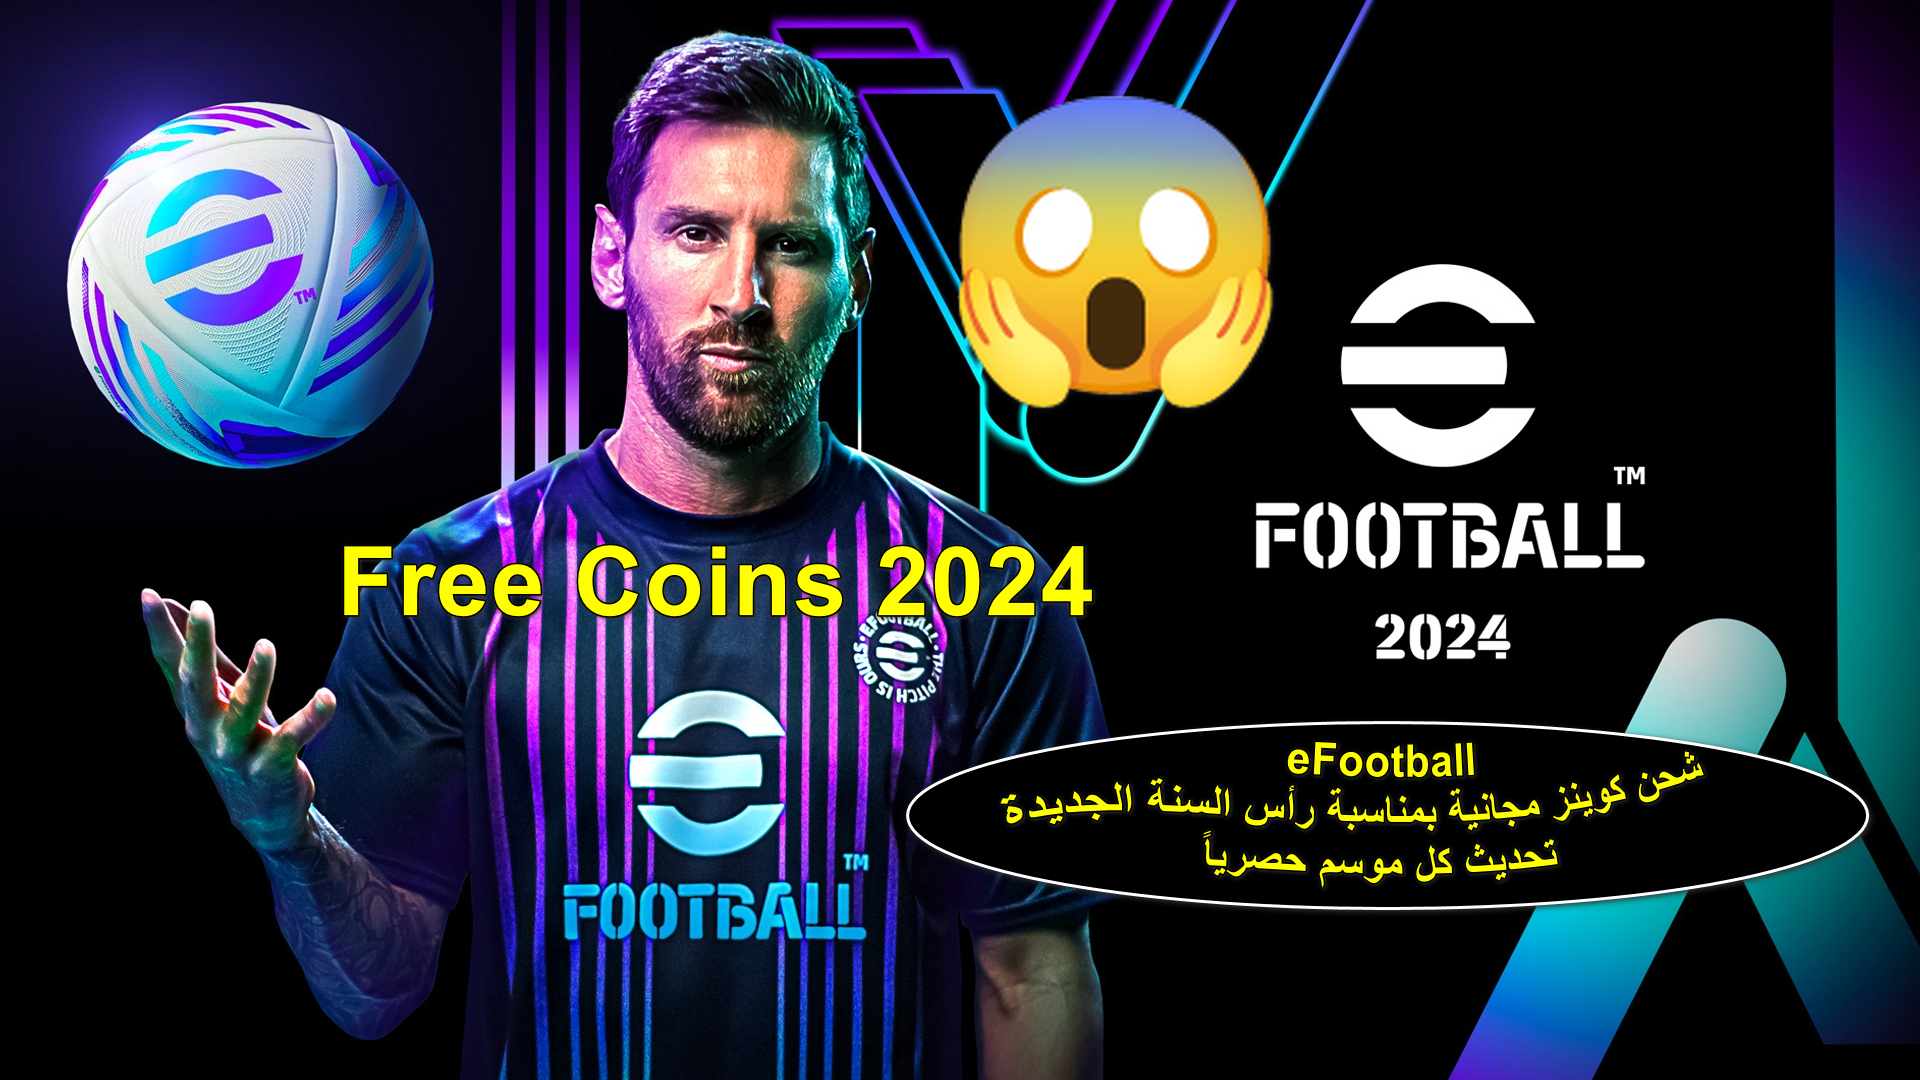 "الحق بسرعة" بالخطوات شحن coins لعبة eFootball بطريقة مجانية بمناسبة عام 2024 الجديد